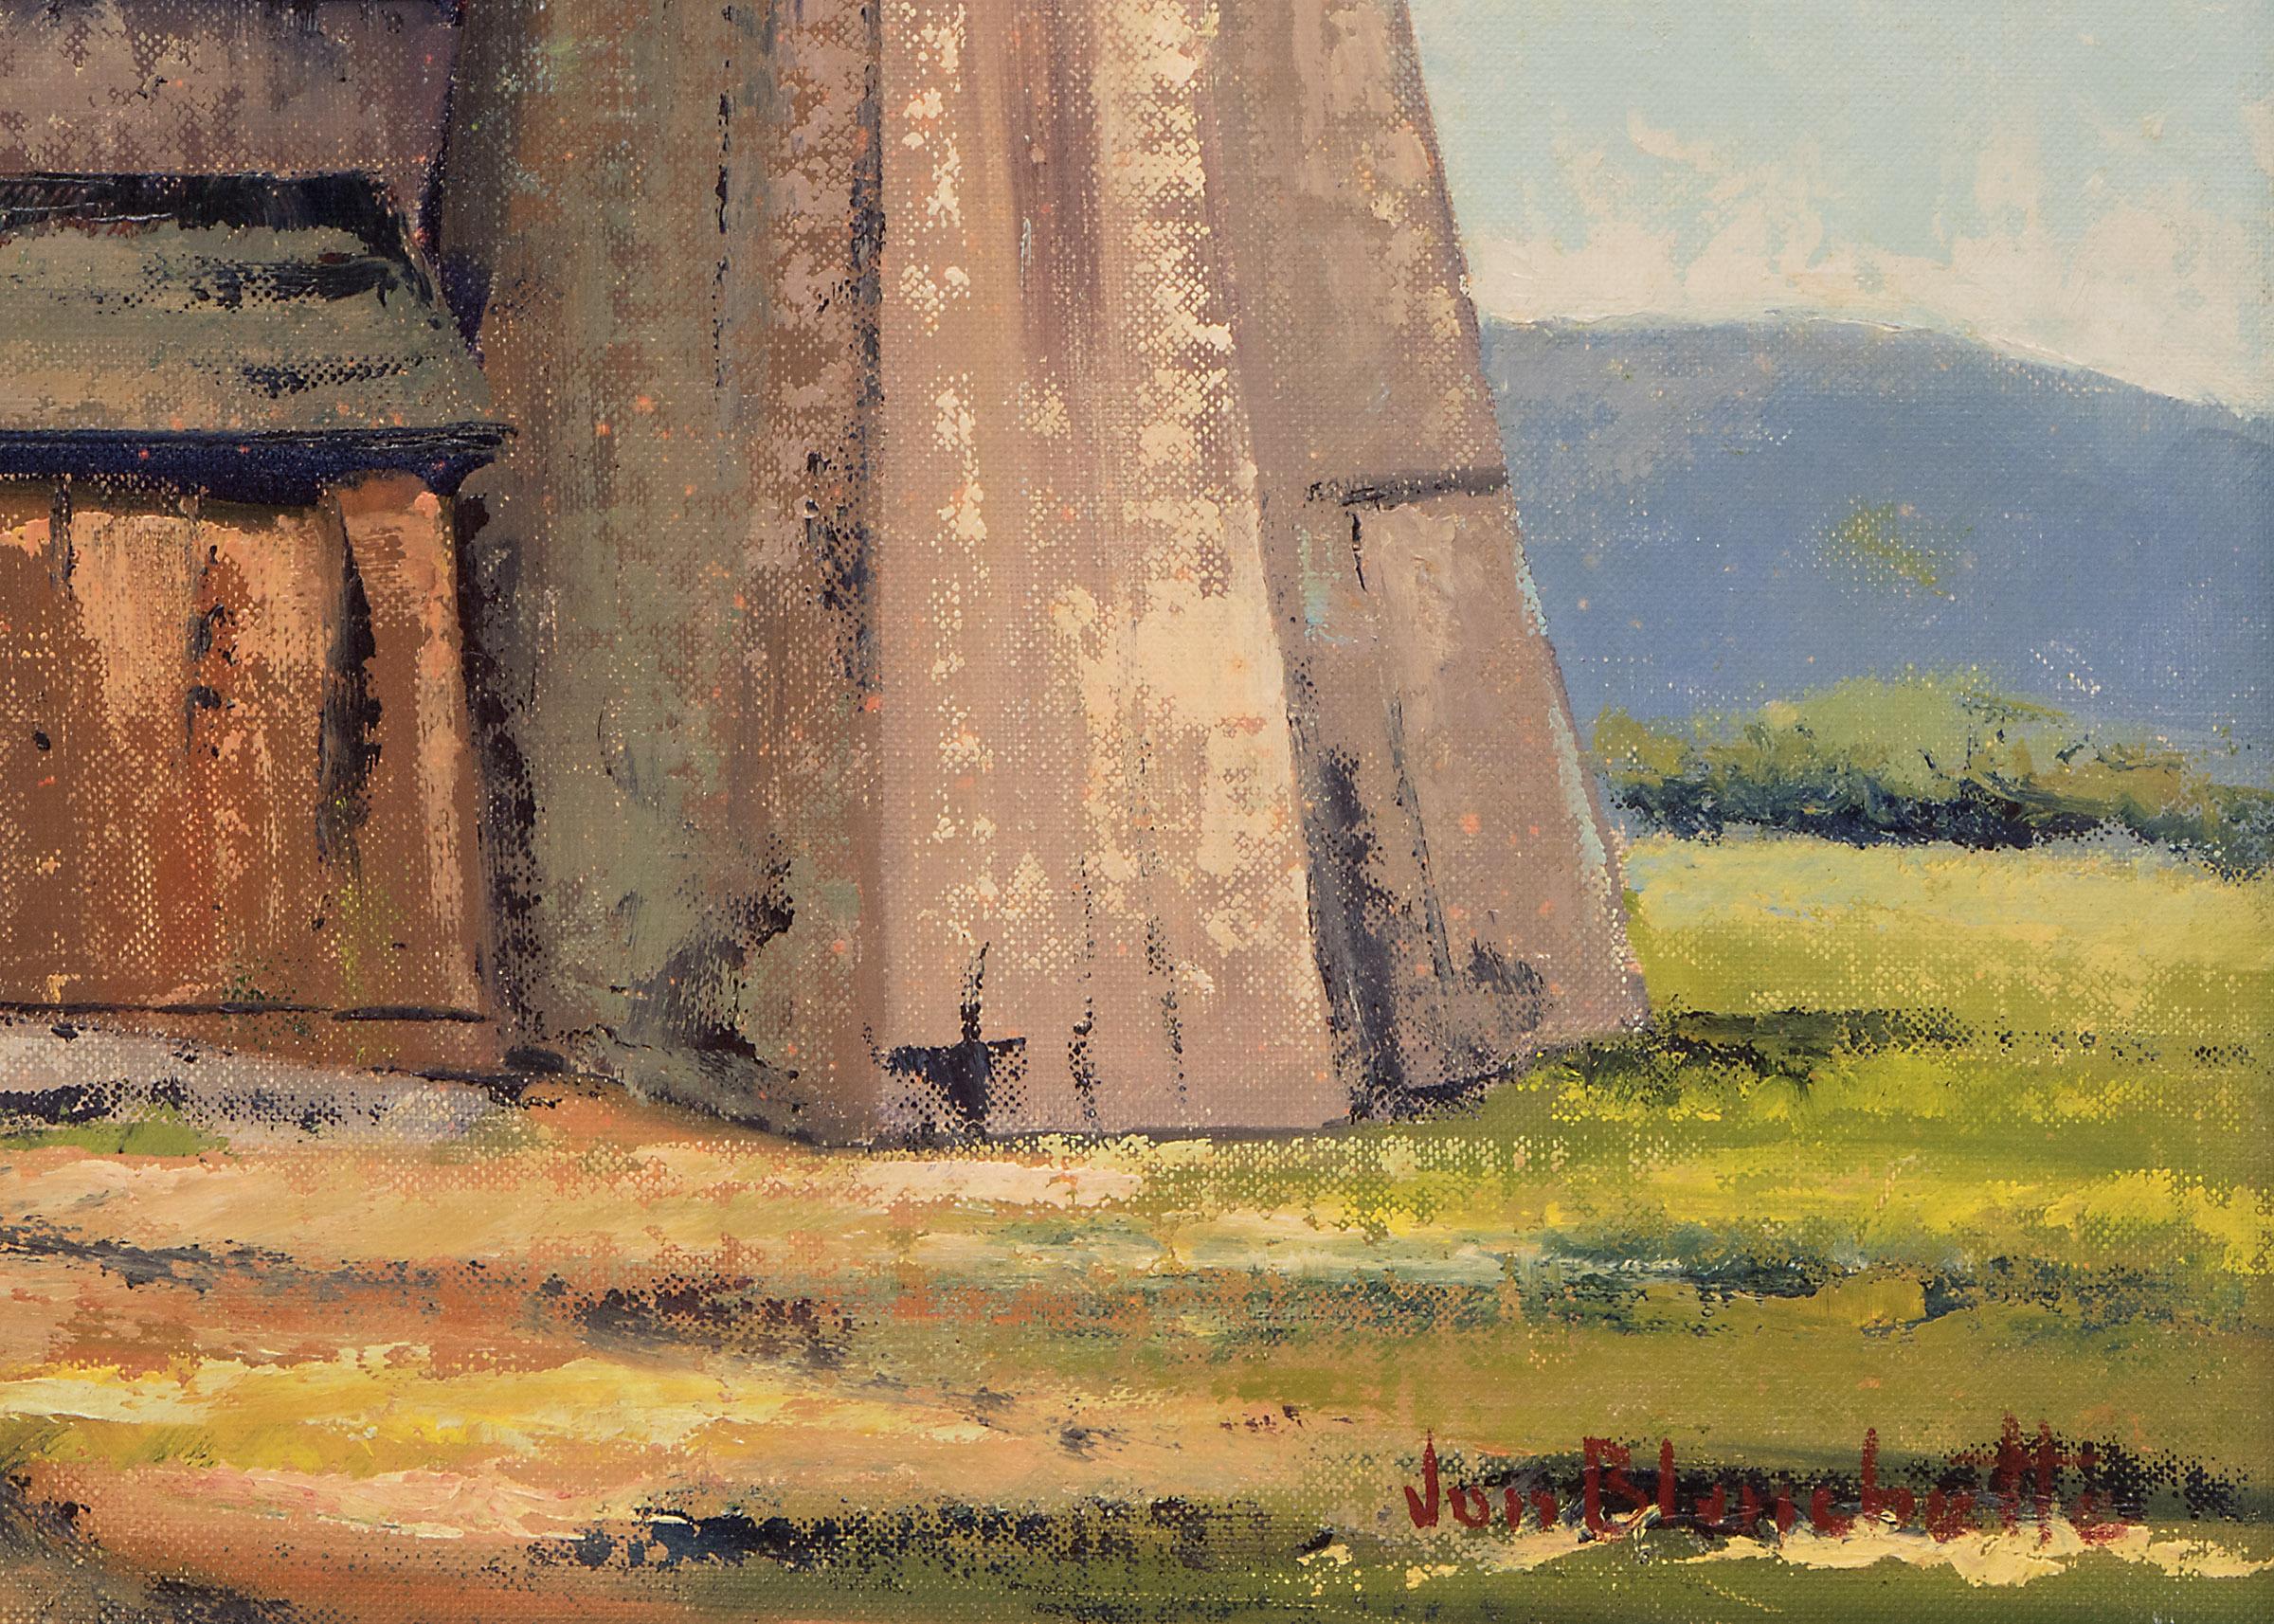 In Soquel, Kalifornien, Bauernhoflandschaft aus den 1950er Jahren mit Silo in Blau, Grün, Gold und Grau (Amerikanische Moderne), Painting, von Jon Blanchette